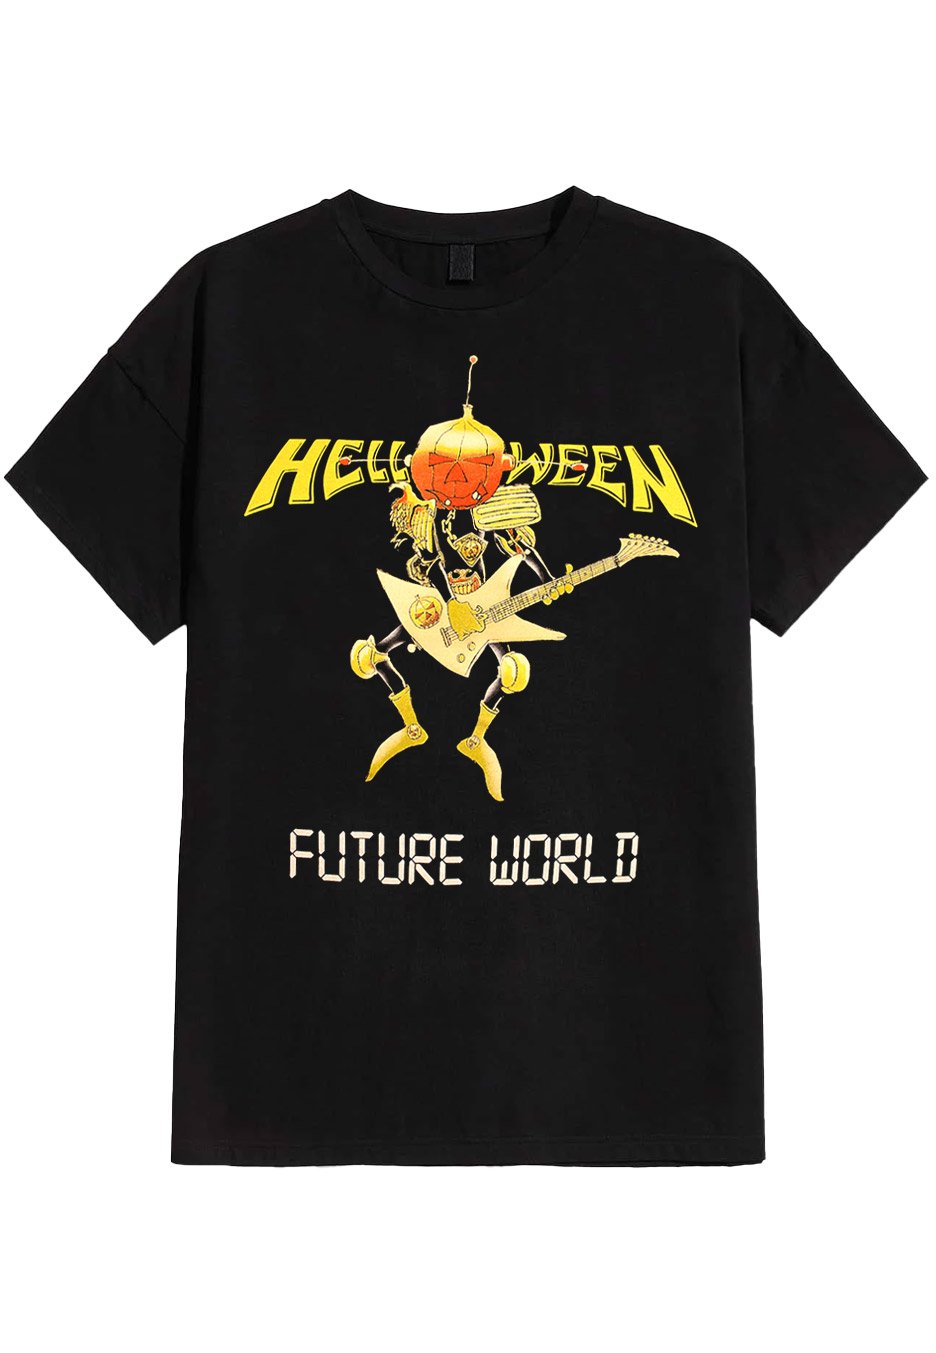 Helloween - Future World - T-Shirt